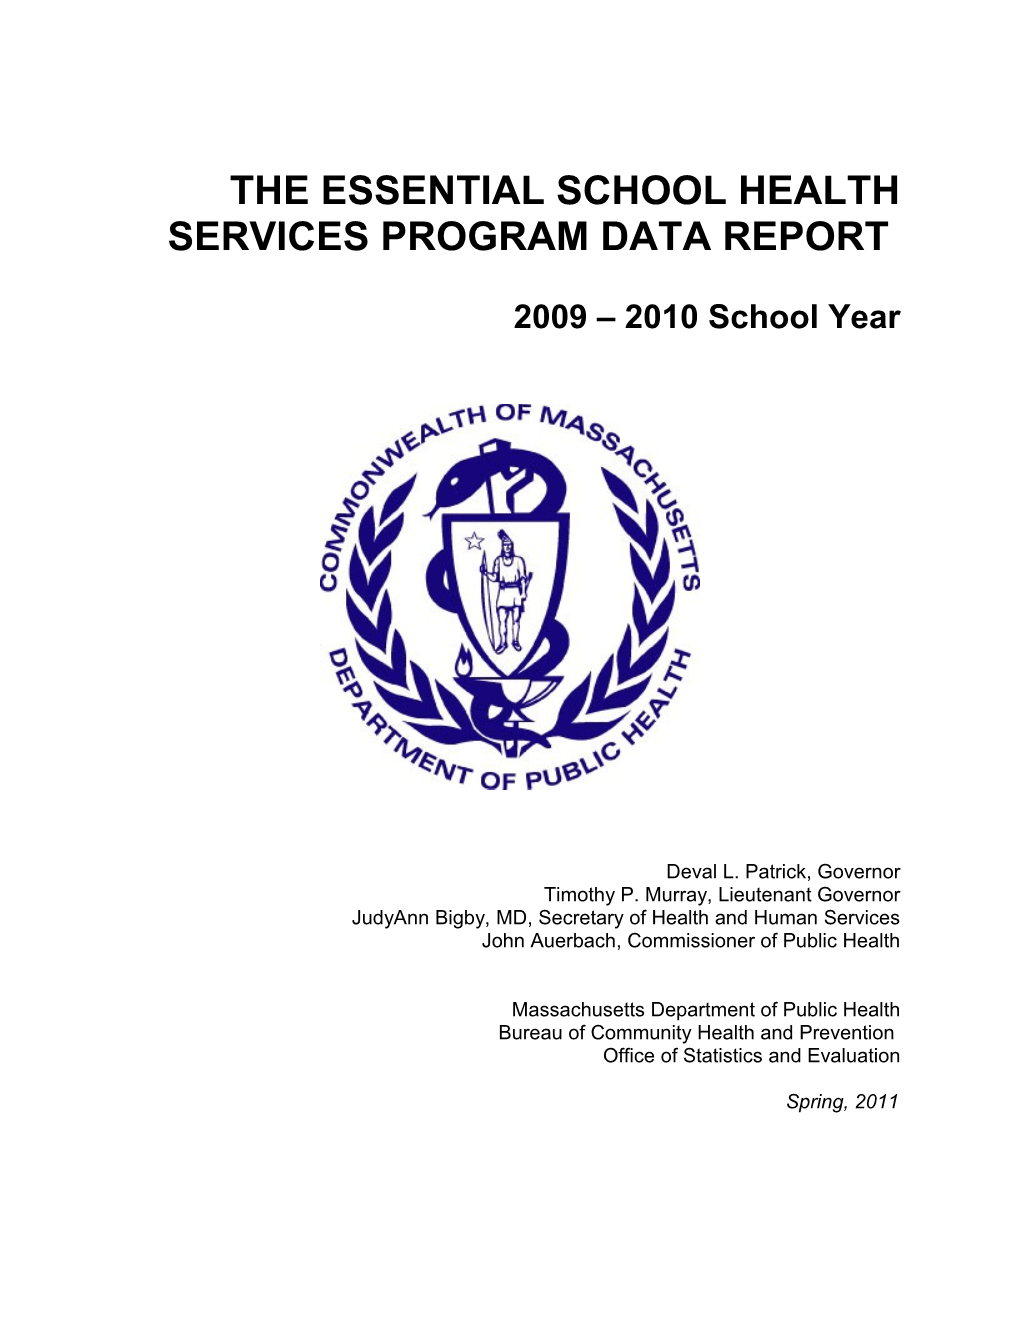 ESHS Annual Data Report